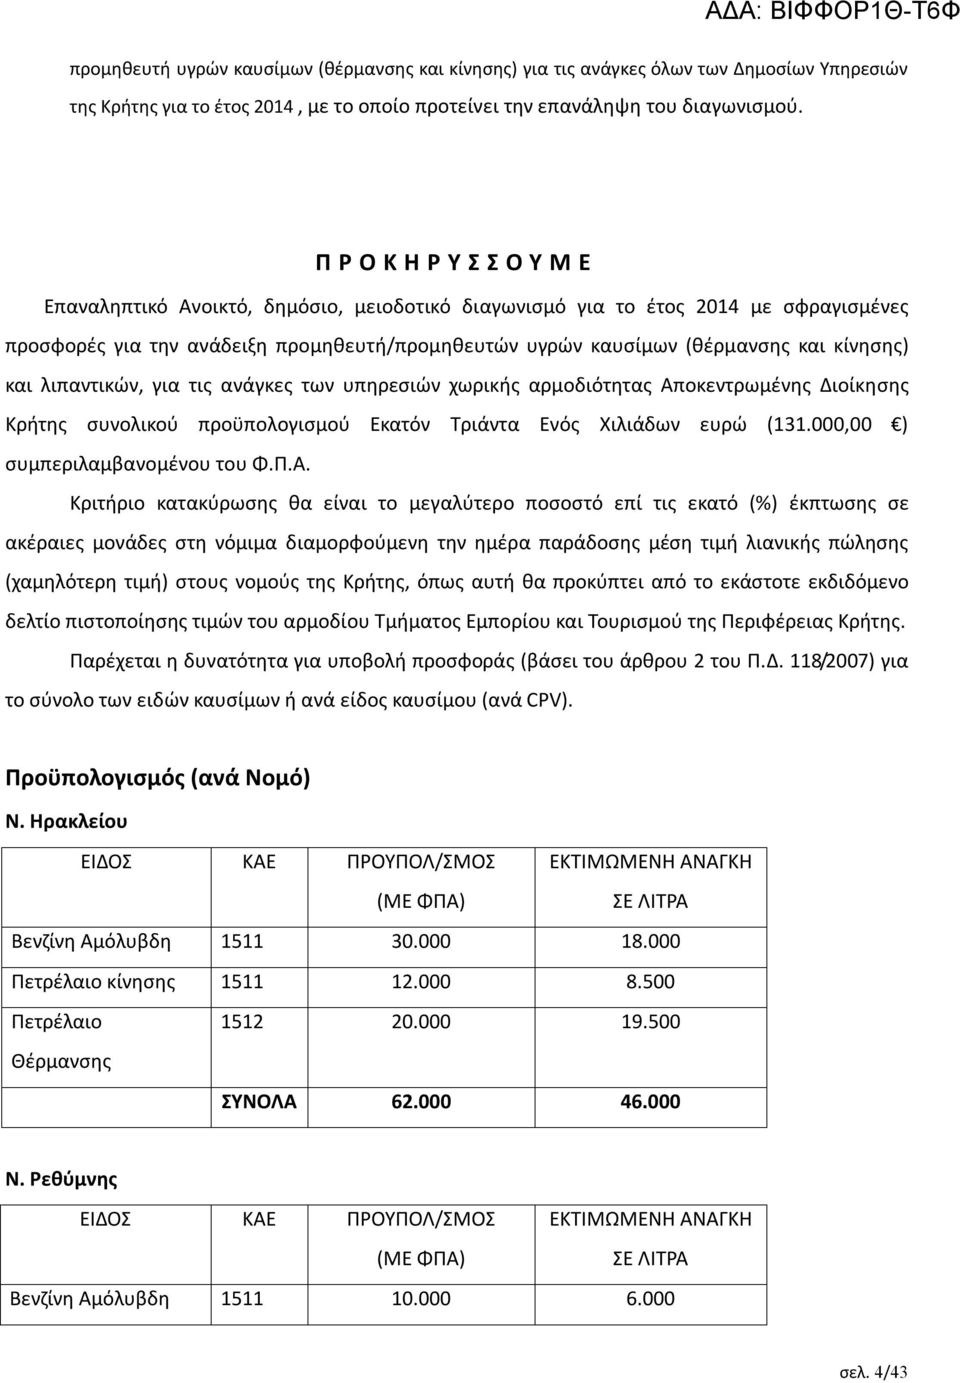 κίνησης) και λιπαντικών, για τις ανάγκες των υπηρεσιών χωρικής αρμοδιότητας Αποκεντρωμένης Διοίκησης Κρήτης συνολικού προϋπολογισμού Εκατόν Τριάντα Ενός Χιλιάδων ευρώ (131.